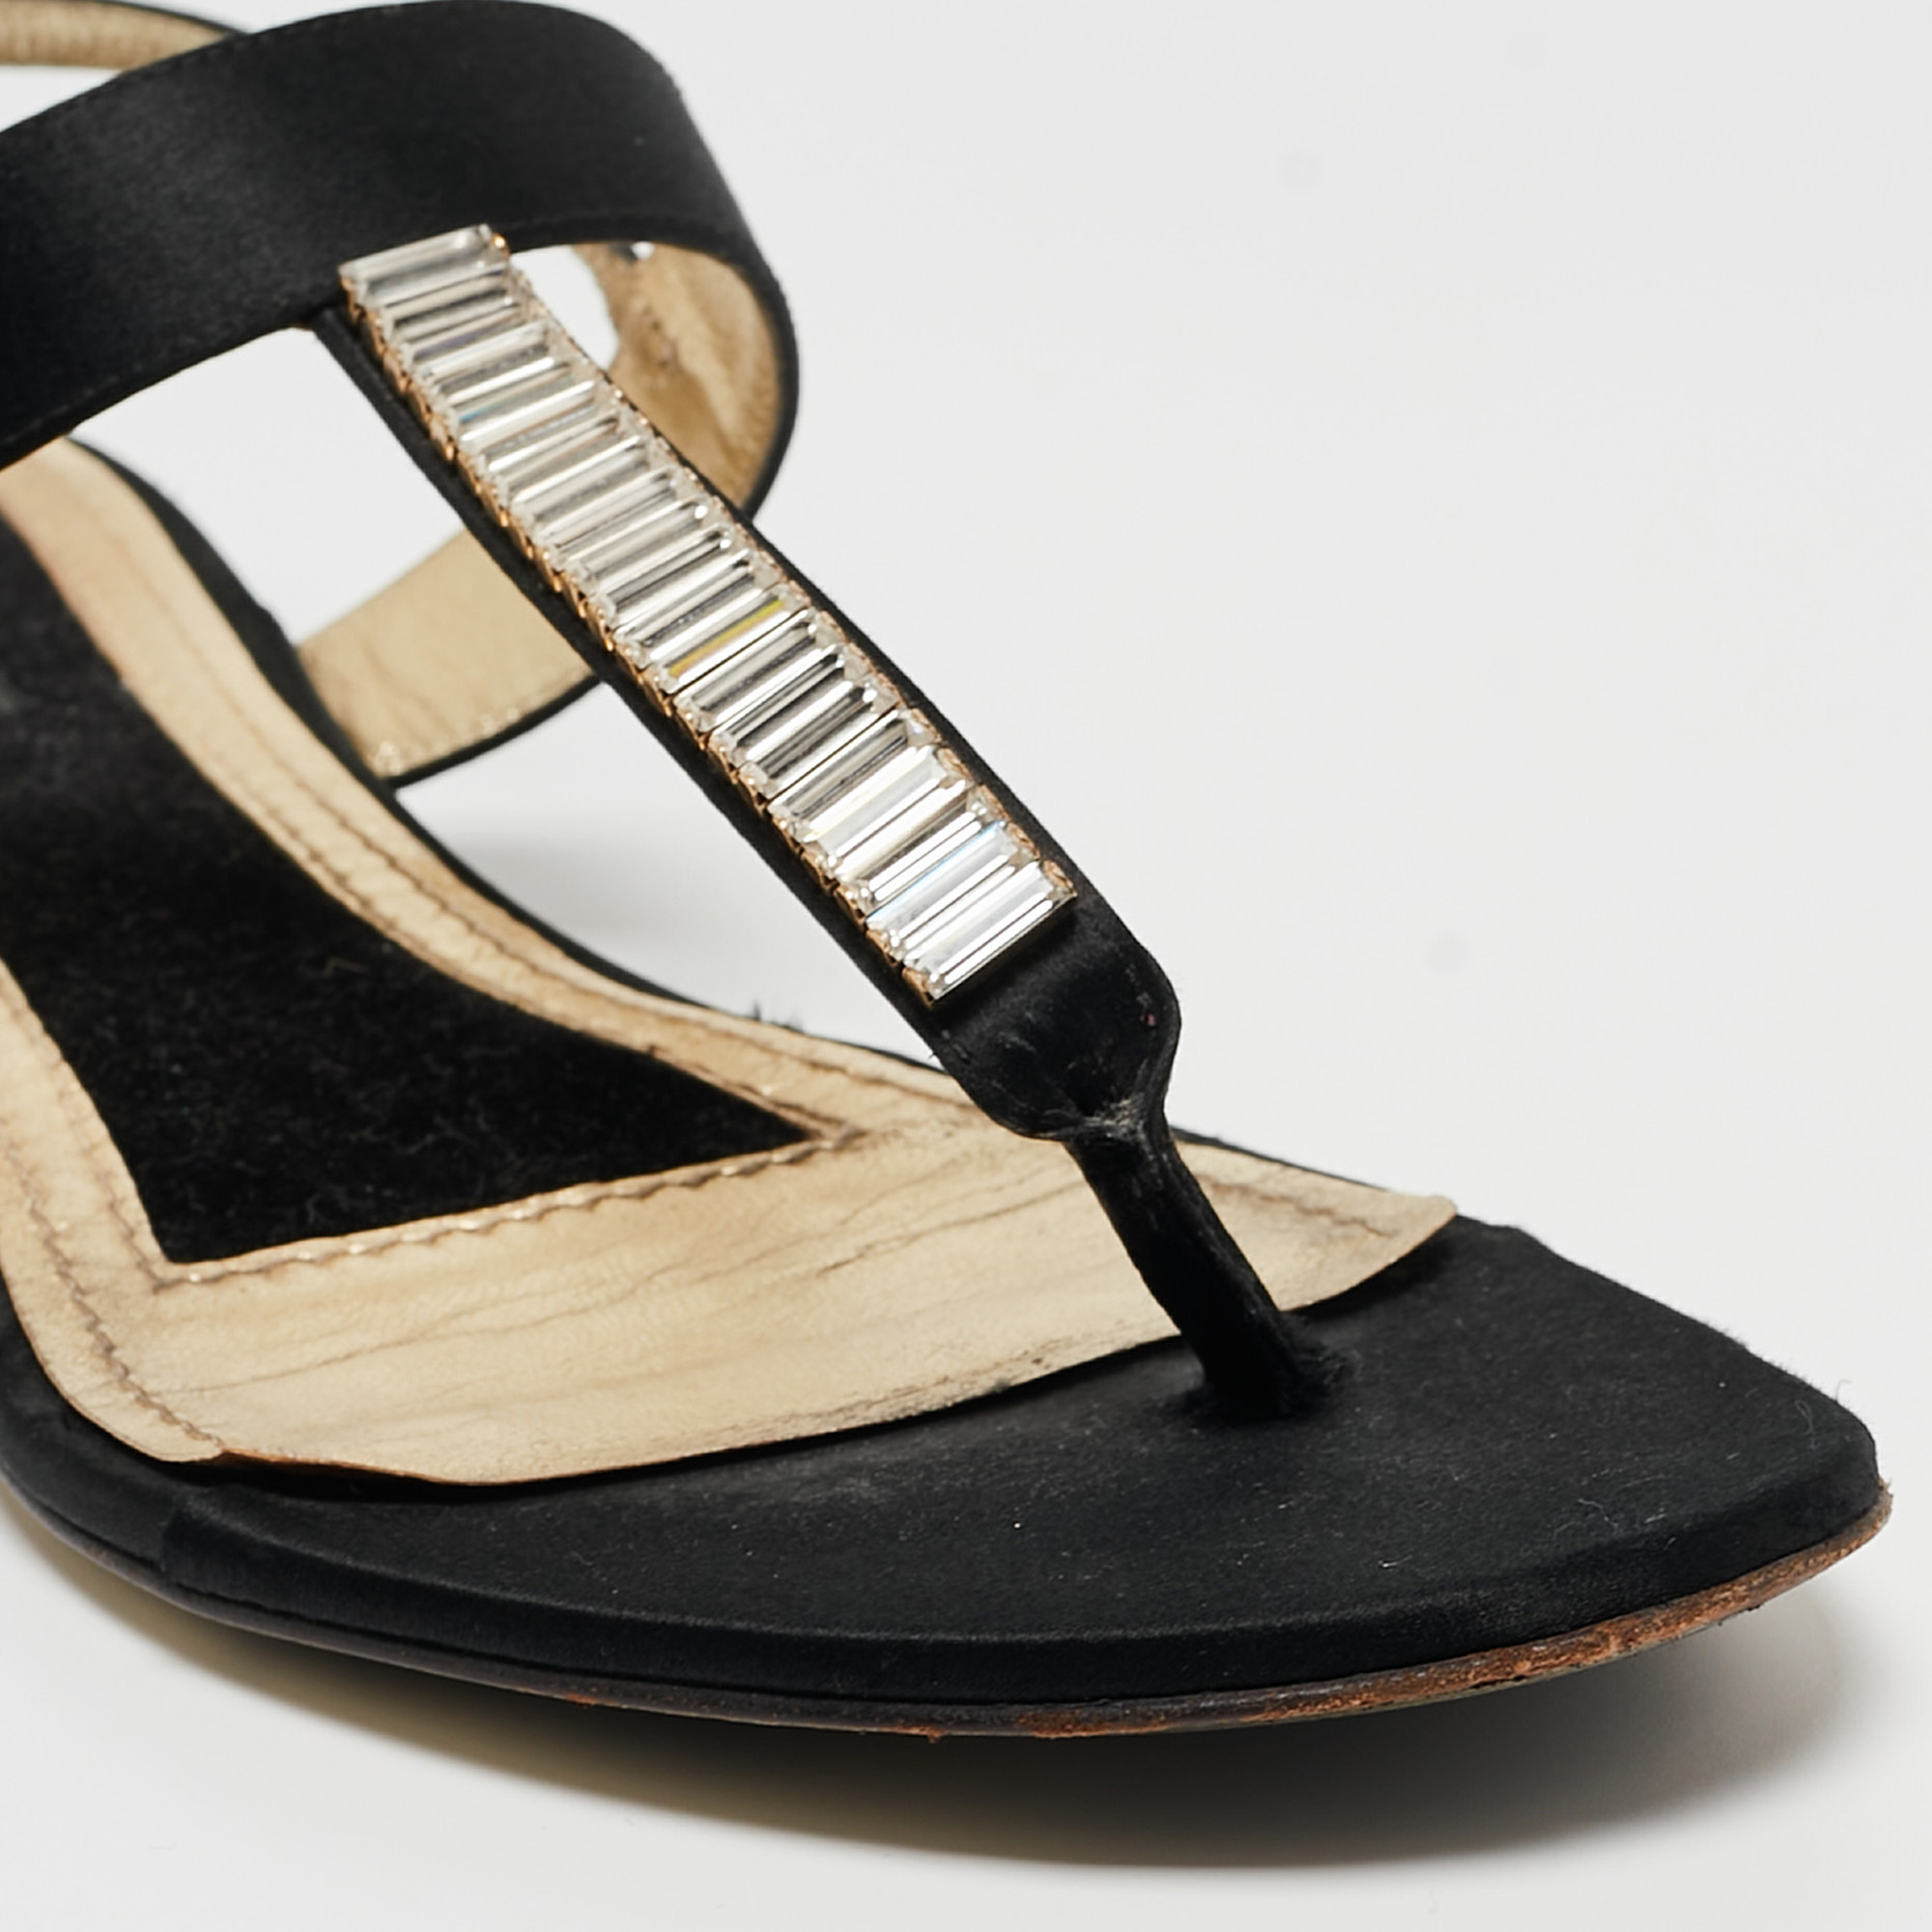 Dolce & Gabbana Black Satin Crystal Embellished Thong Flat Sandals Size 37.5